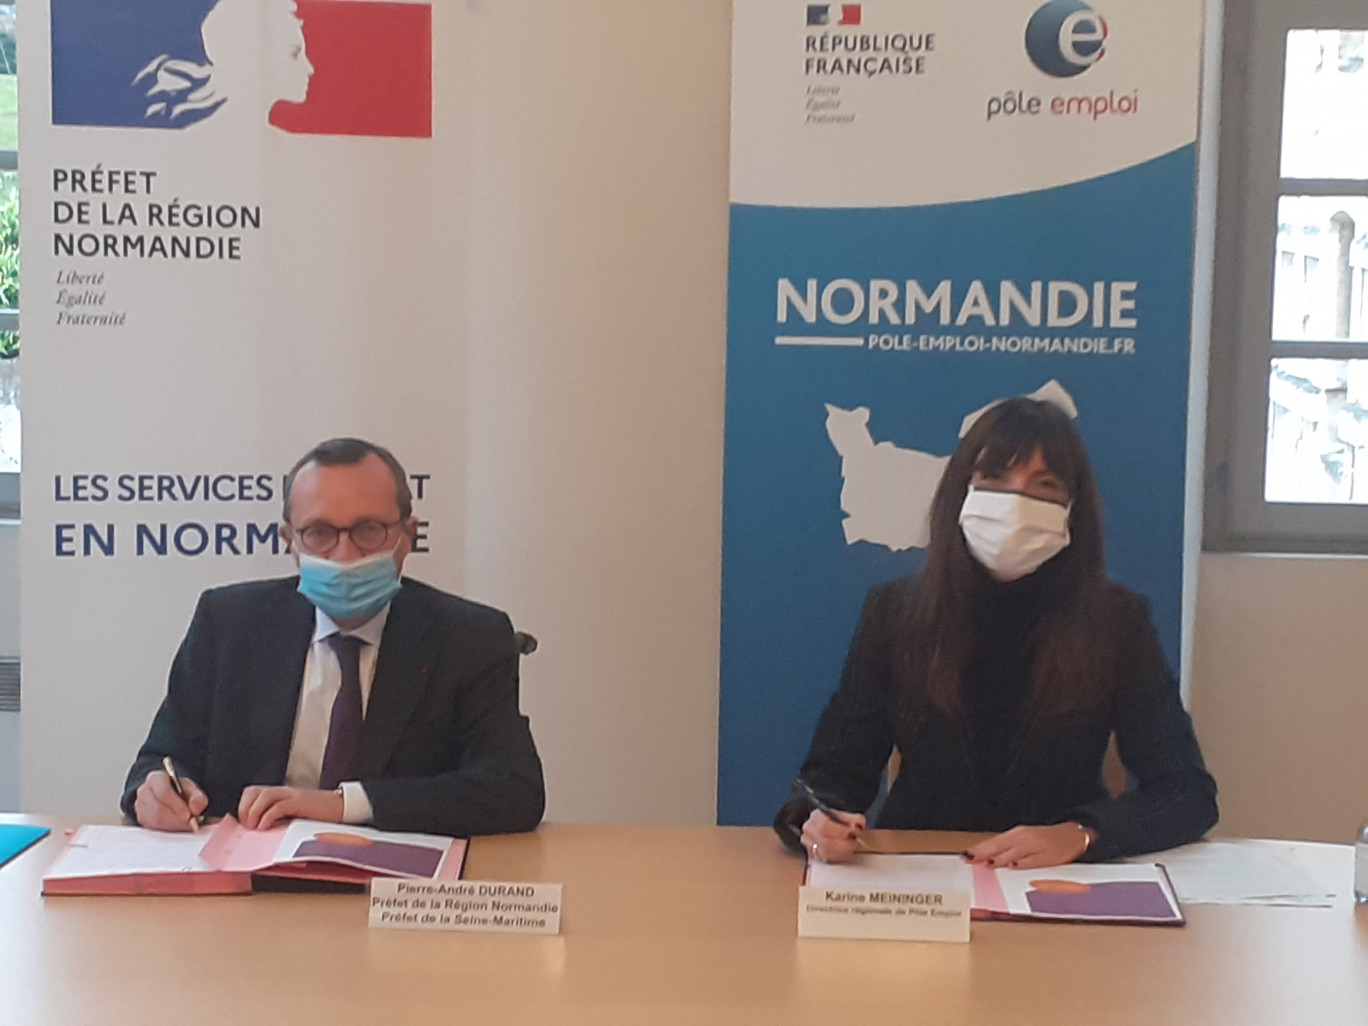 Le préfet de la région Normandie, Pierre-André Durand et Meininger, directrice régionale Pôle emploi Normandie ont signé une convention de partenariat en faveur de l'emploi dans la fonction publique.